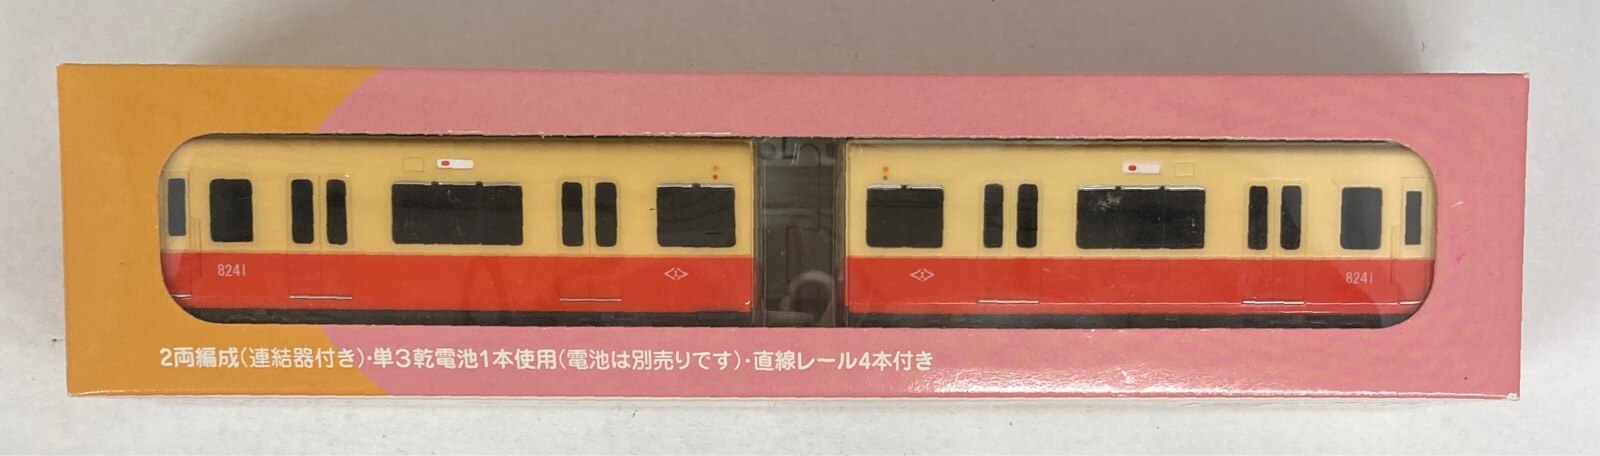 スルッとKANSAIGOGO!トレイン No.23京阪電気鉄道1900系(普通